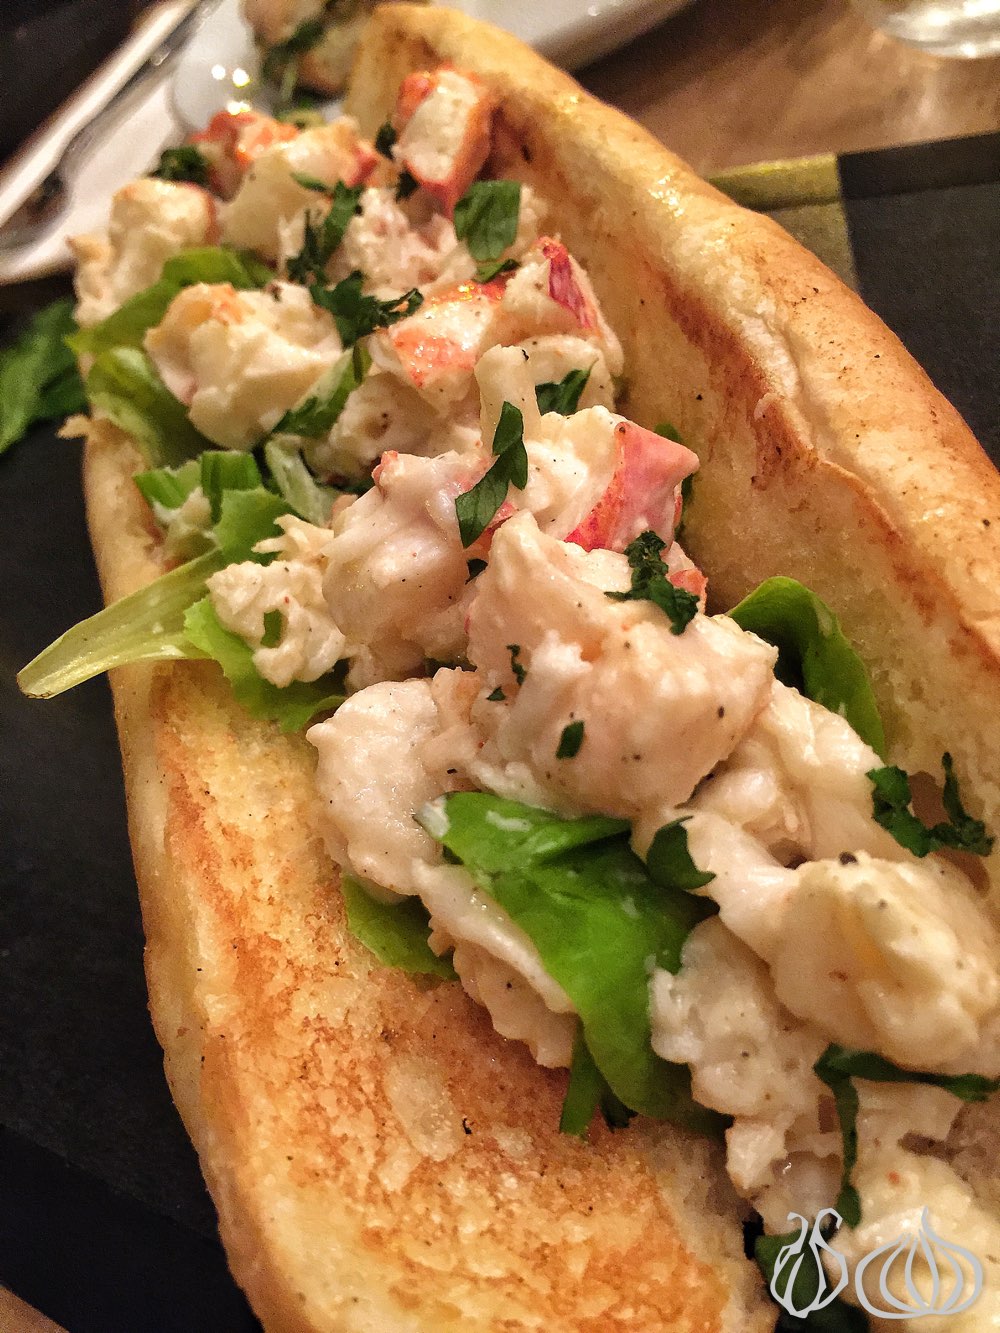 acote-lobster-restaurant-mar-mikhael-beirut-lebanon462014-12-19-07-33-22